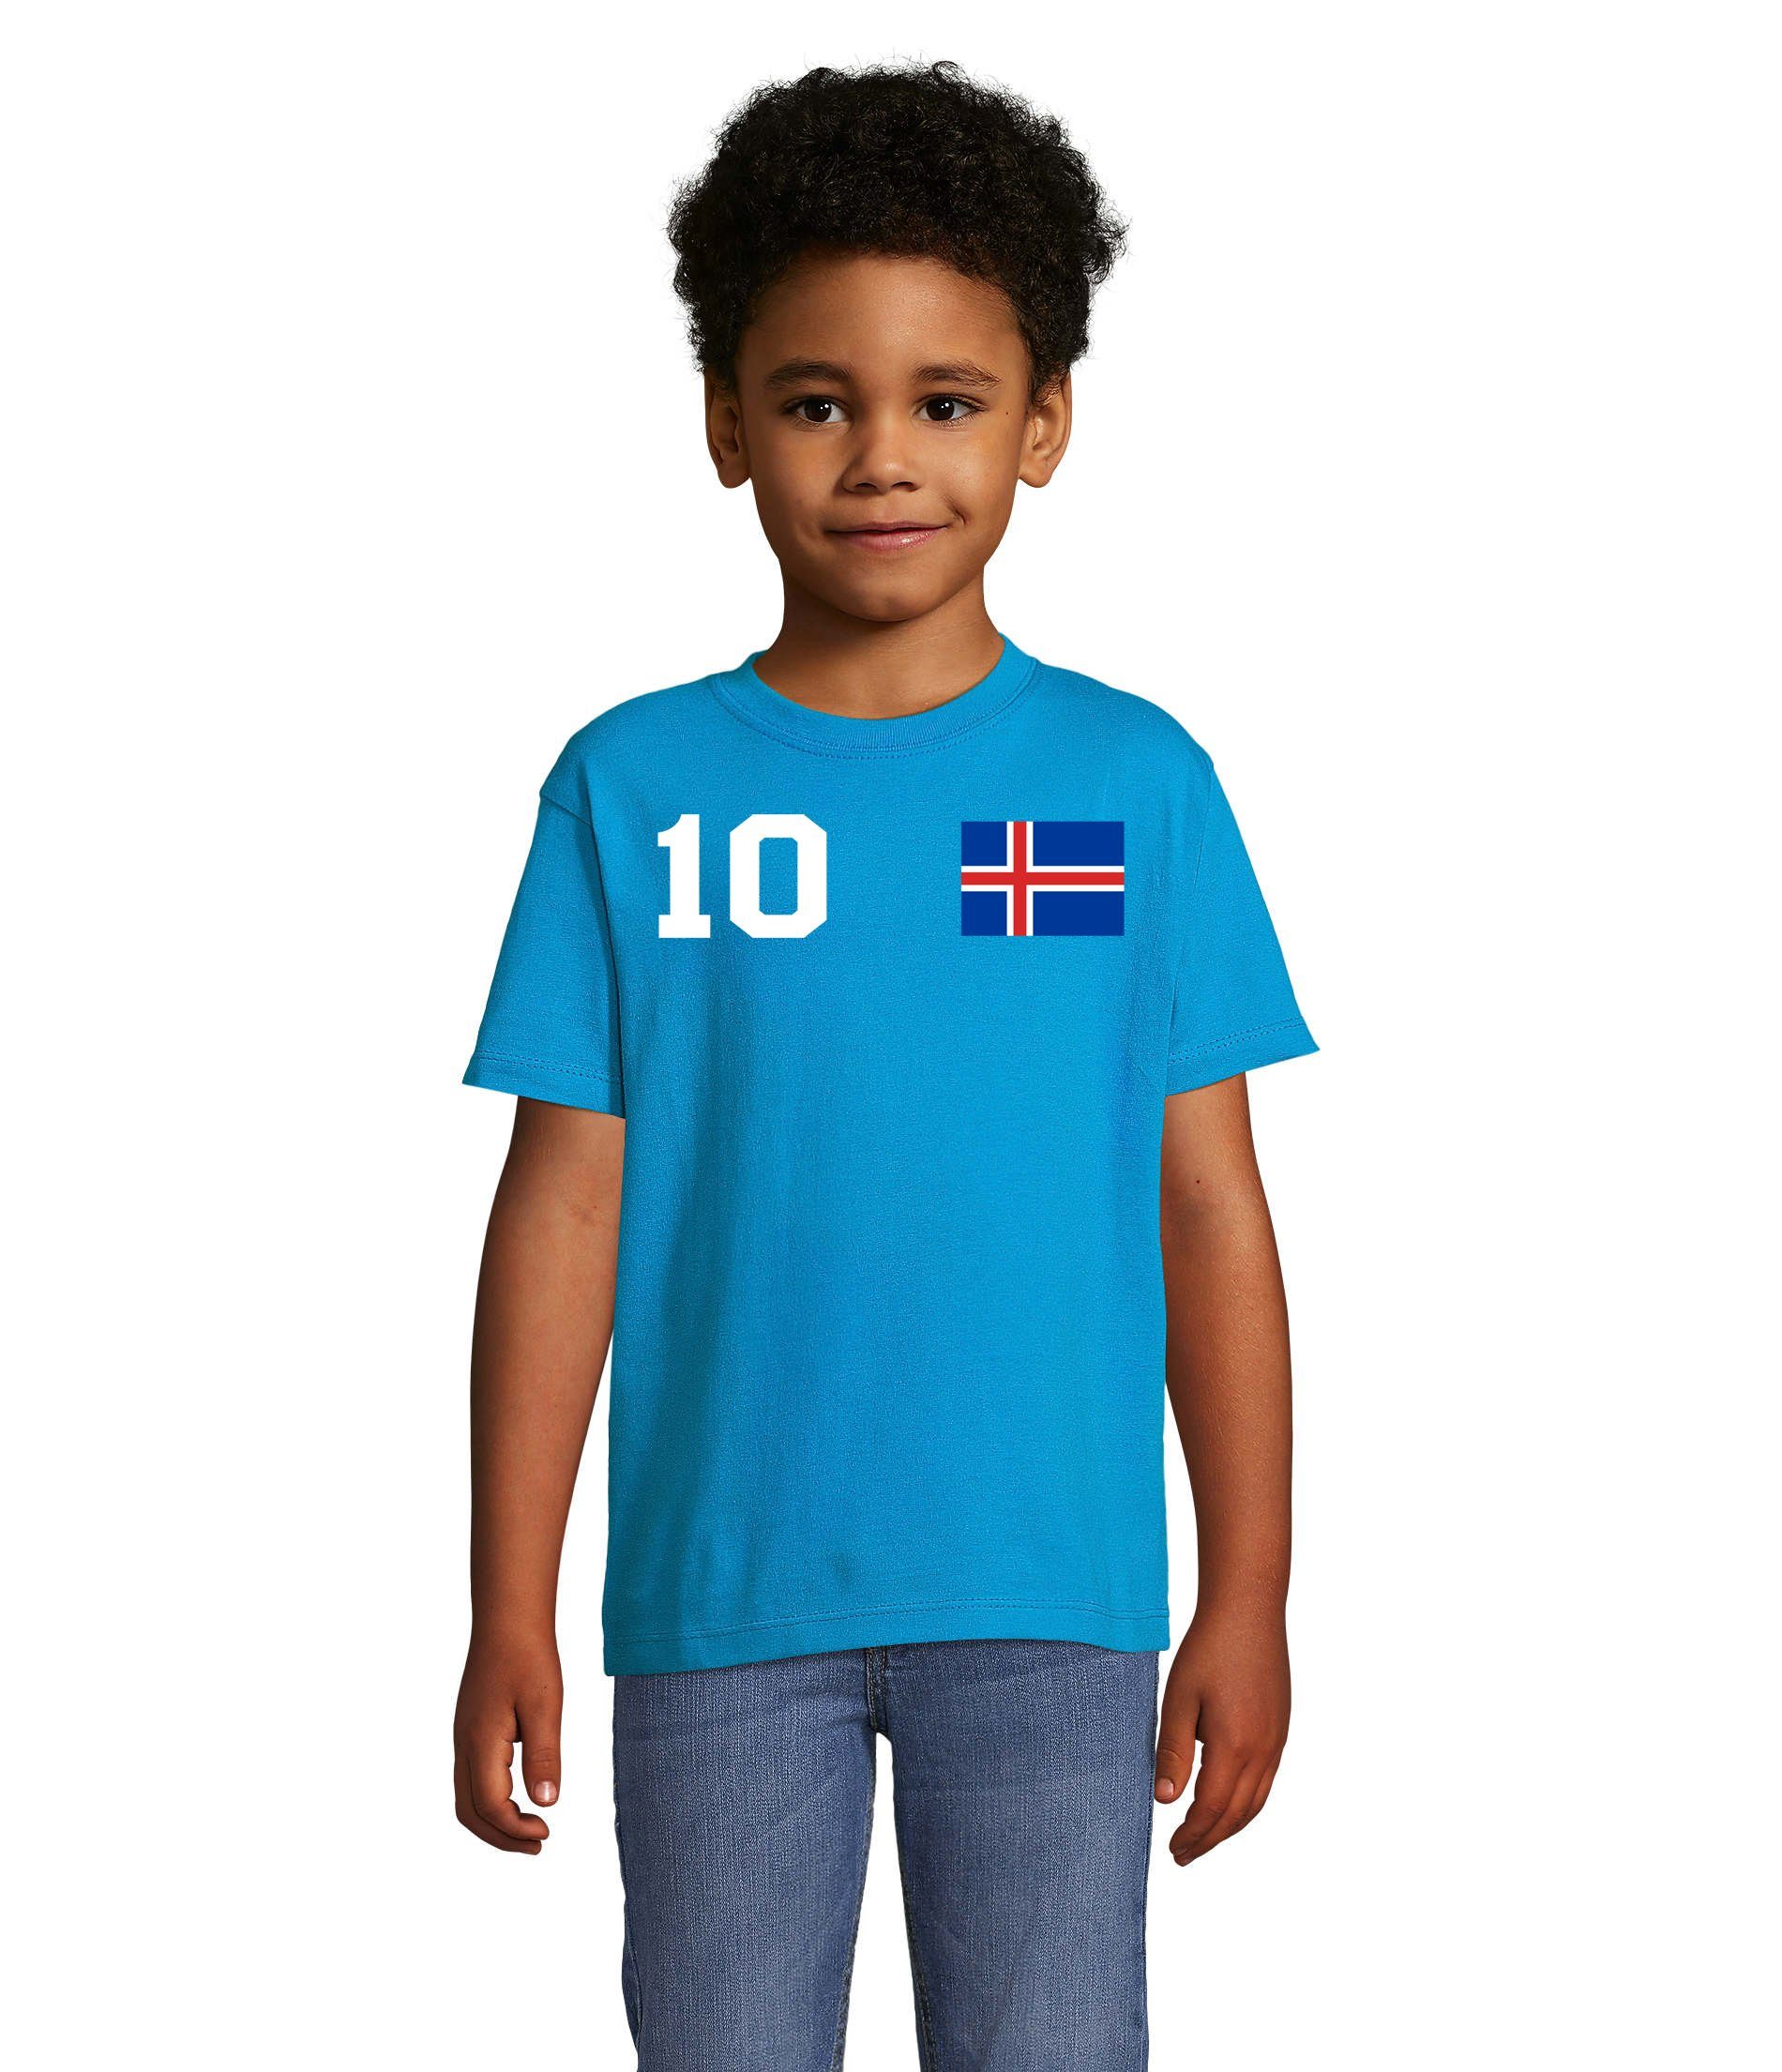 Fußball Handball Trikot Island & Blondie Meister Brownie T-Shirt Sport EM Weiss/Blau Iceland Kinder WM